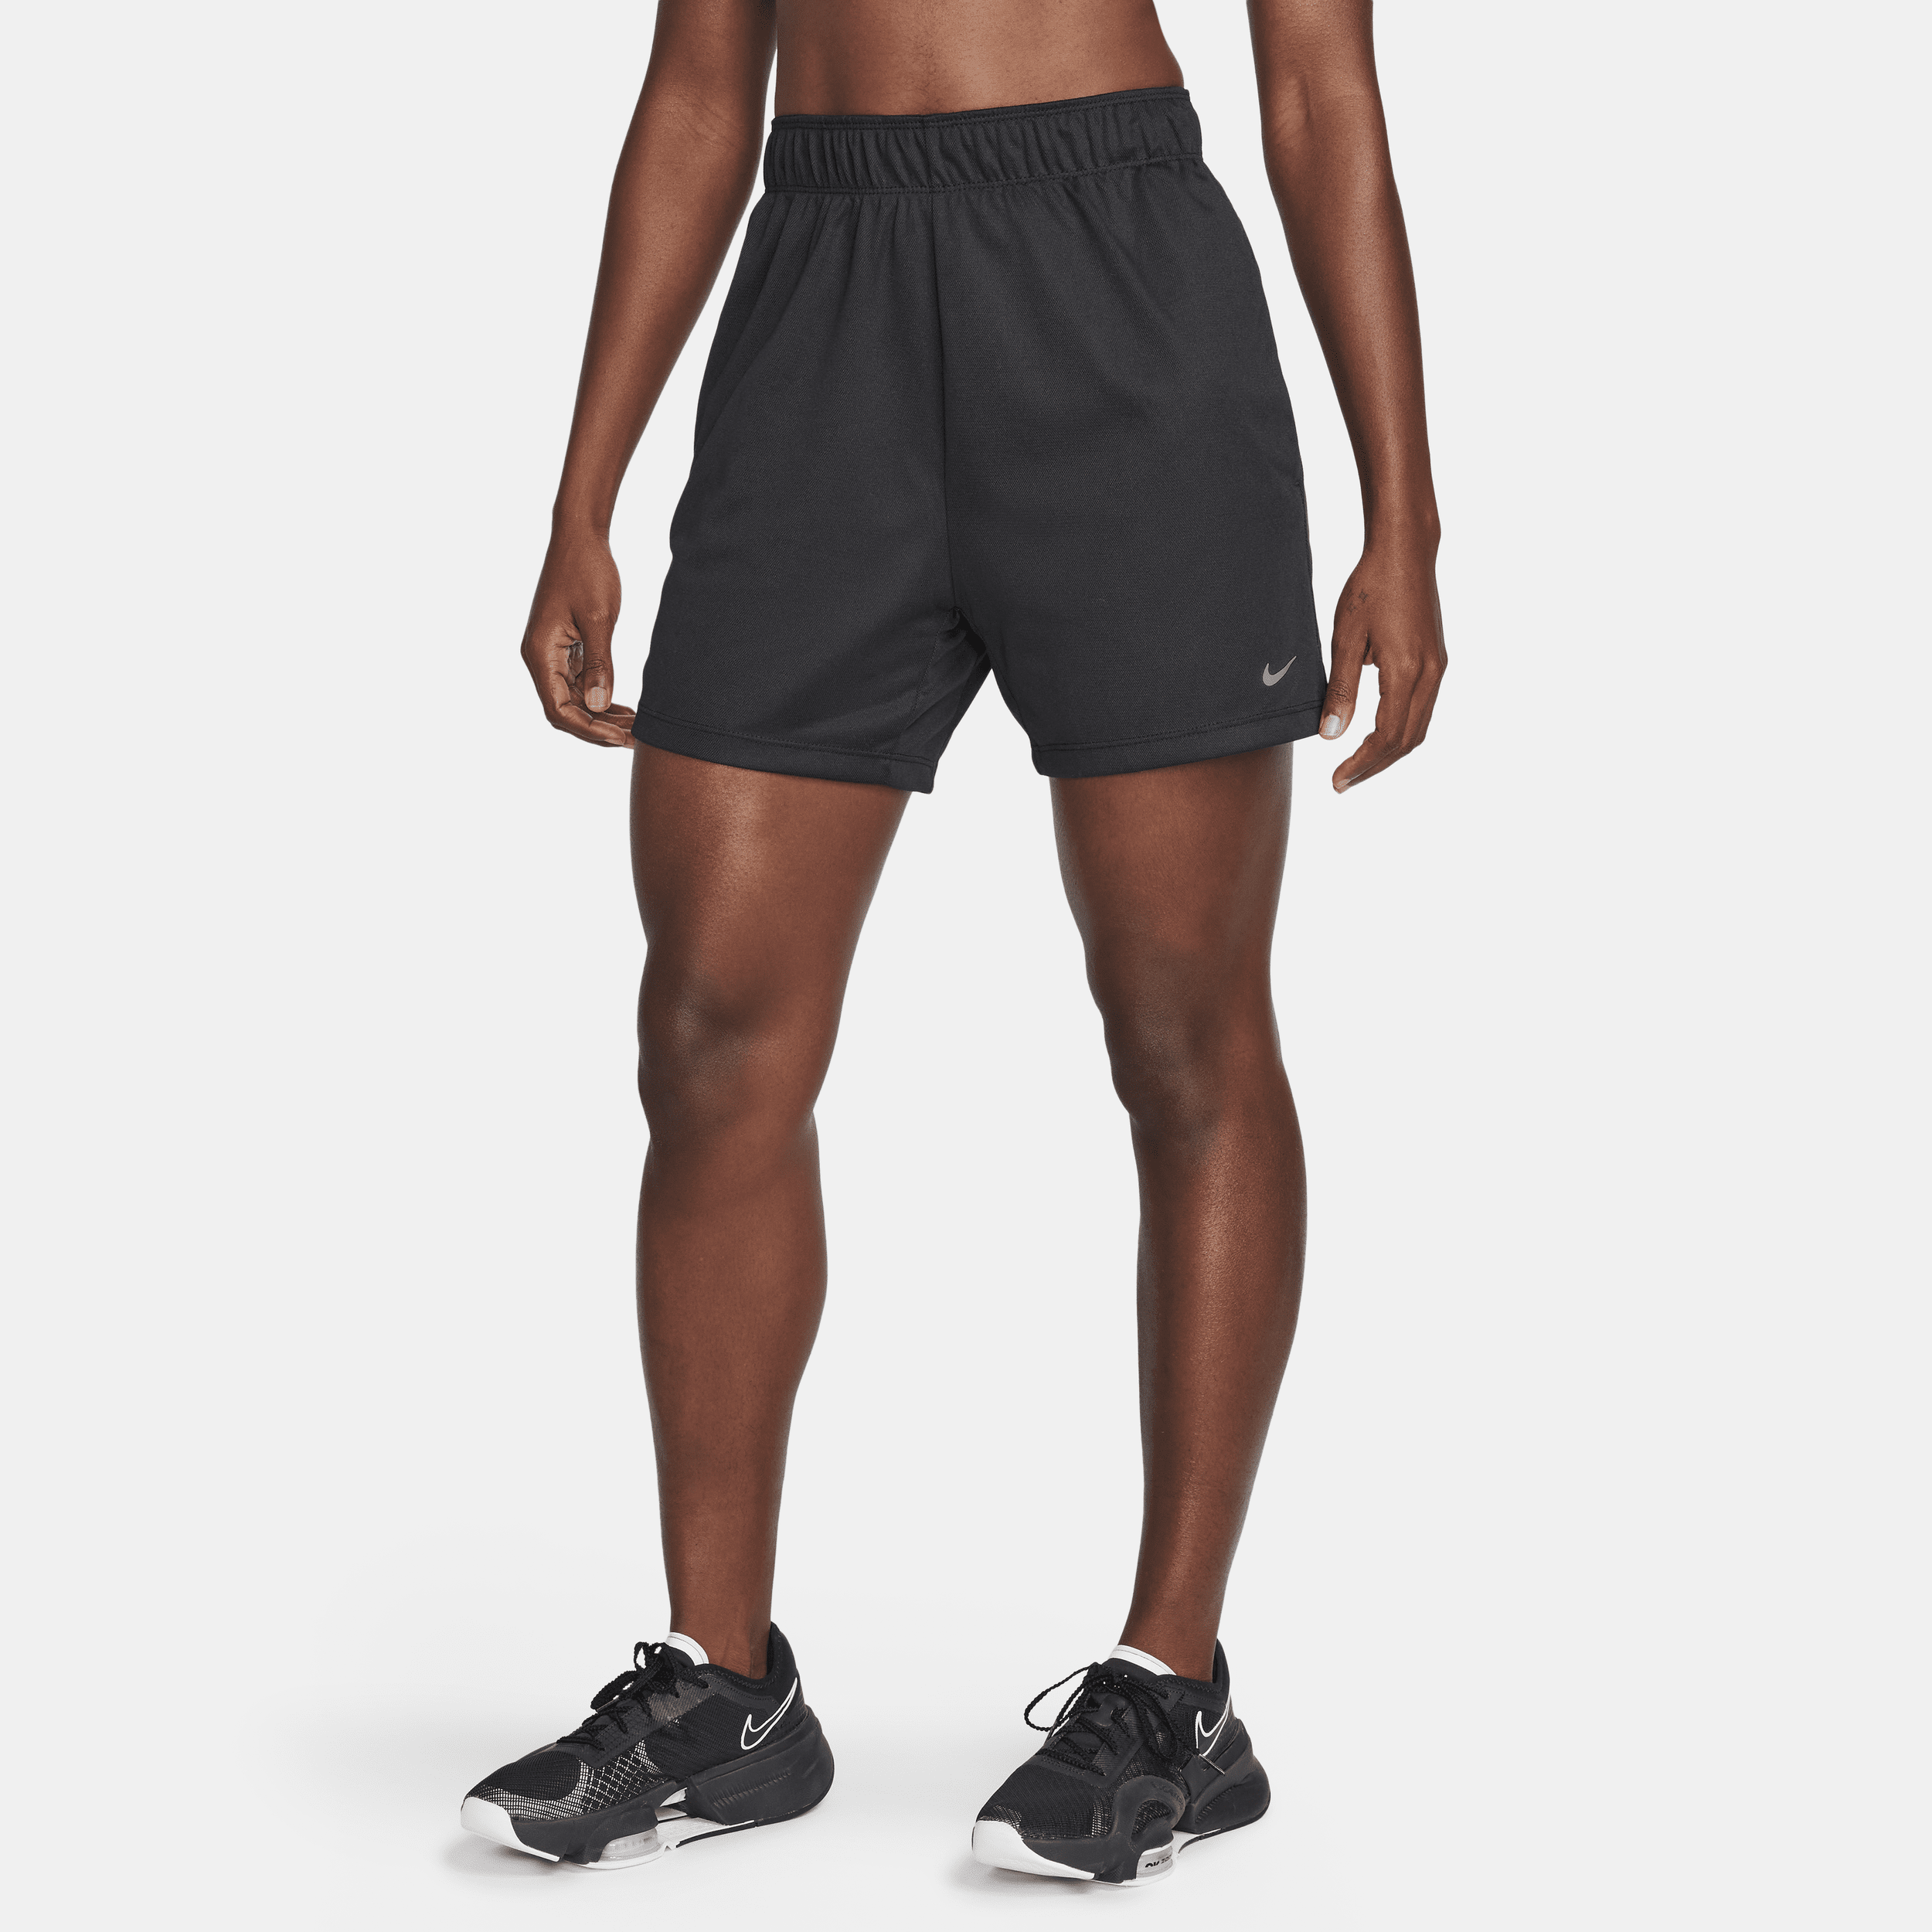 Nike Attack ongevoerde fitnesshorts met Dri-FIT en halfhoge taille voor dames (13 cm) - Zwart